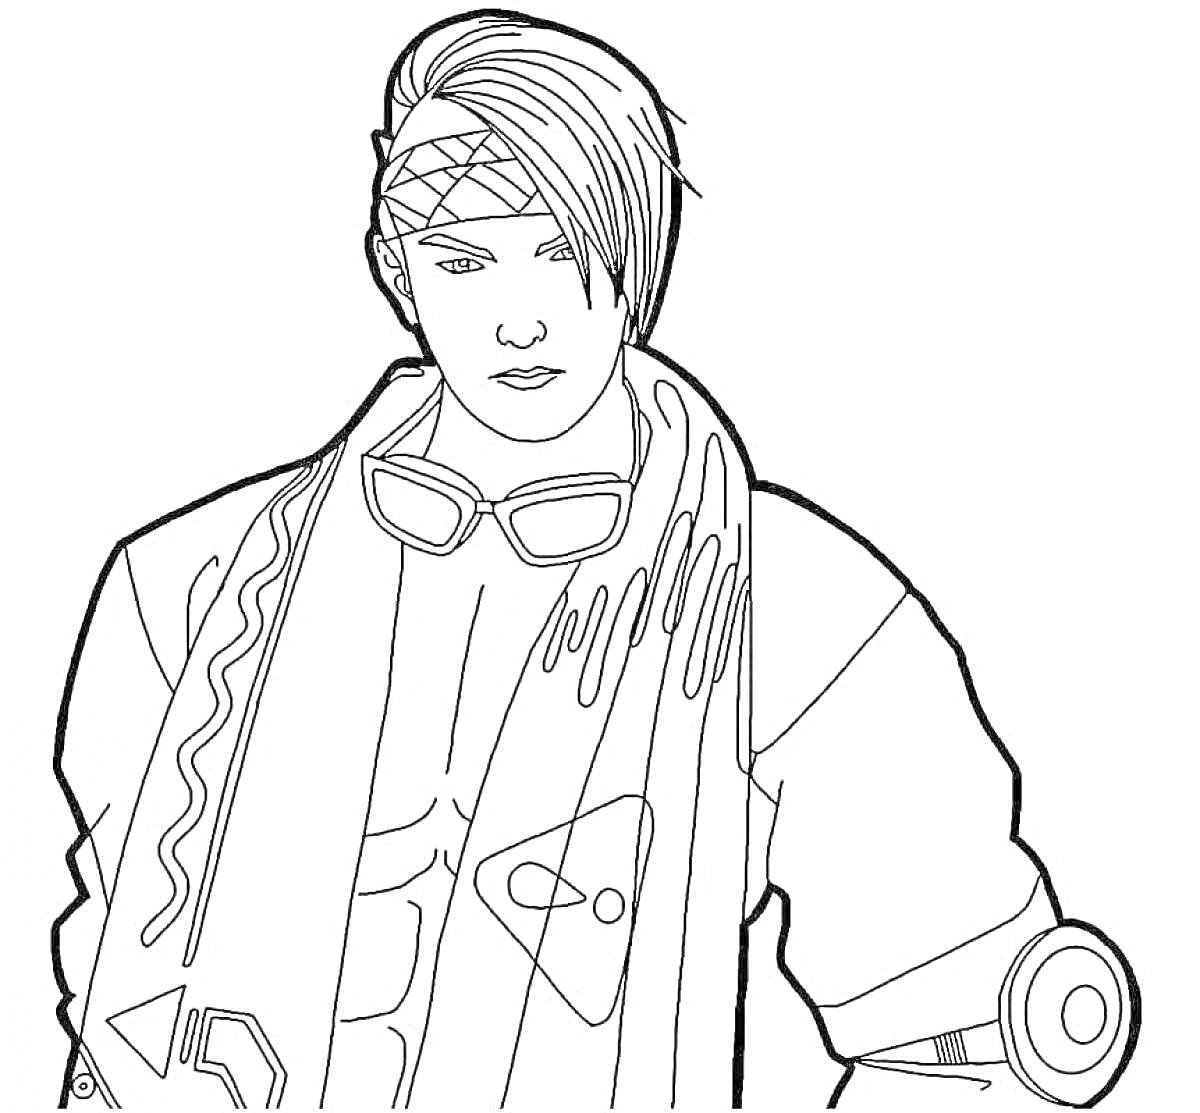 Персонаж Free Fire с повязкой на голове, очками на груди и шарфом, с элементами одежды, включая гиперсовременные детали на рукаве и груди